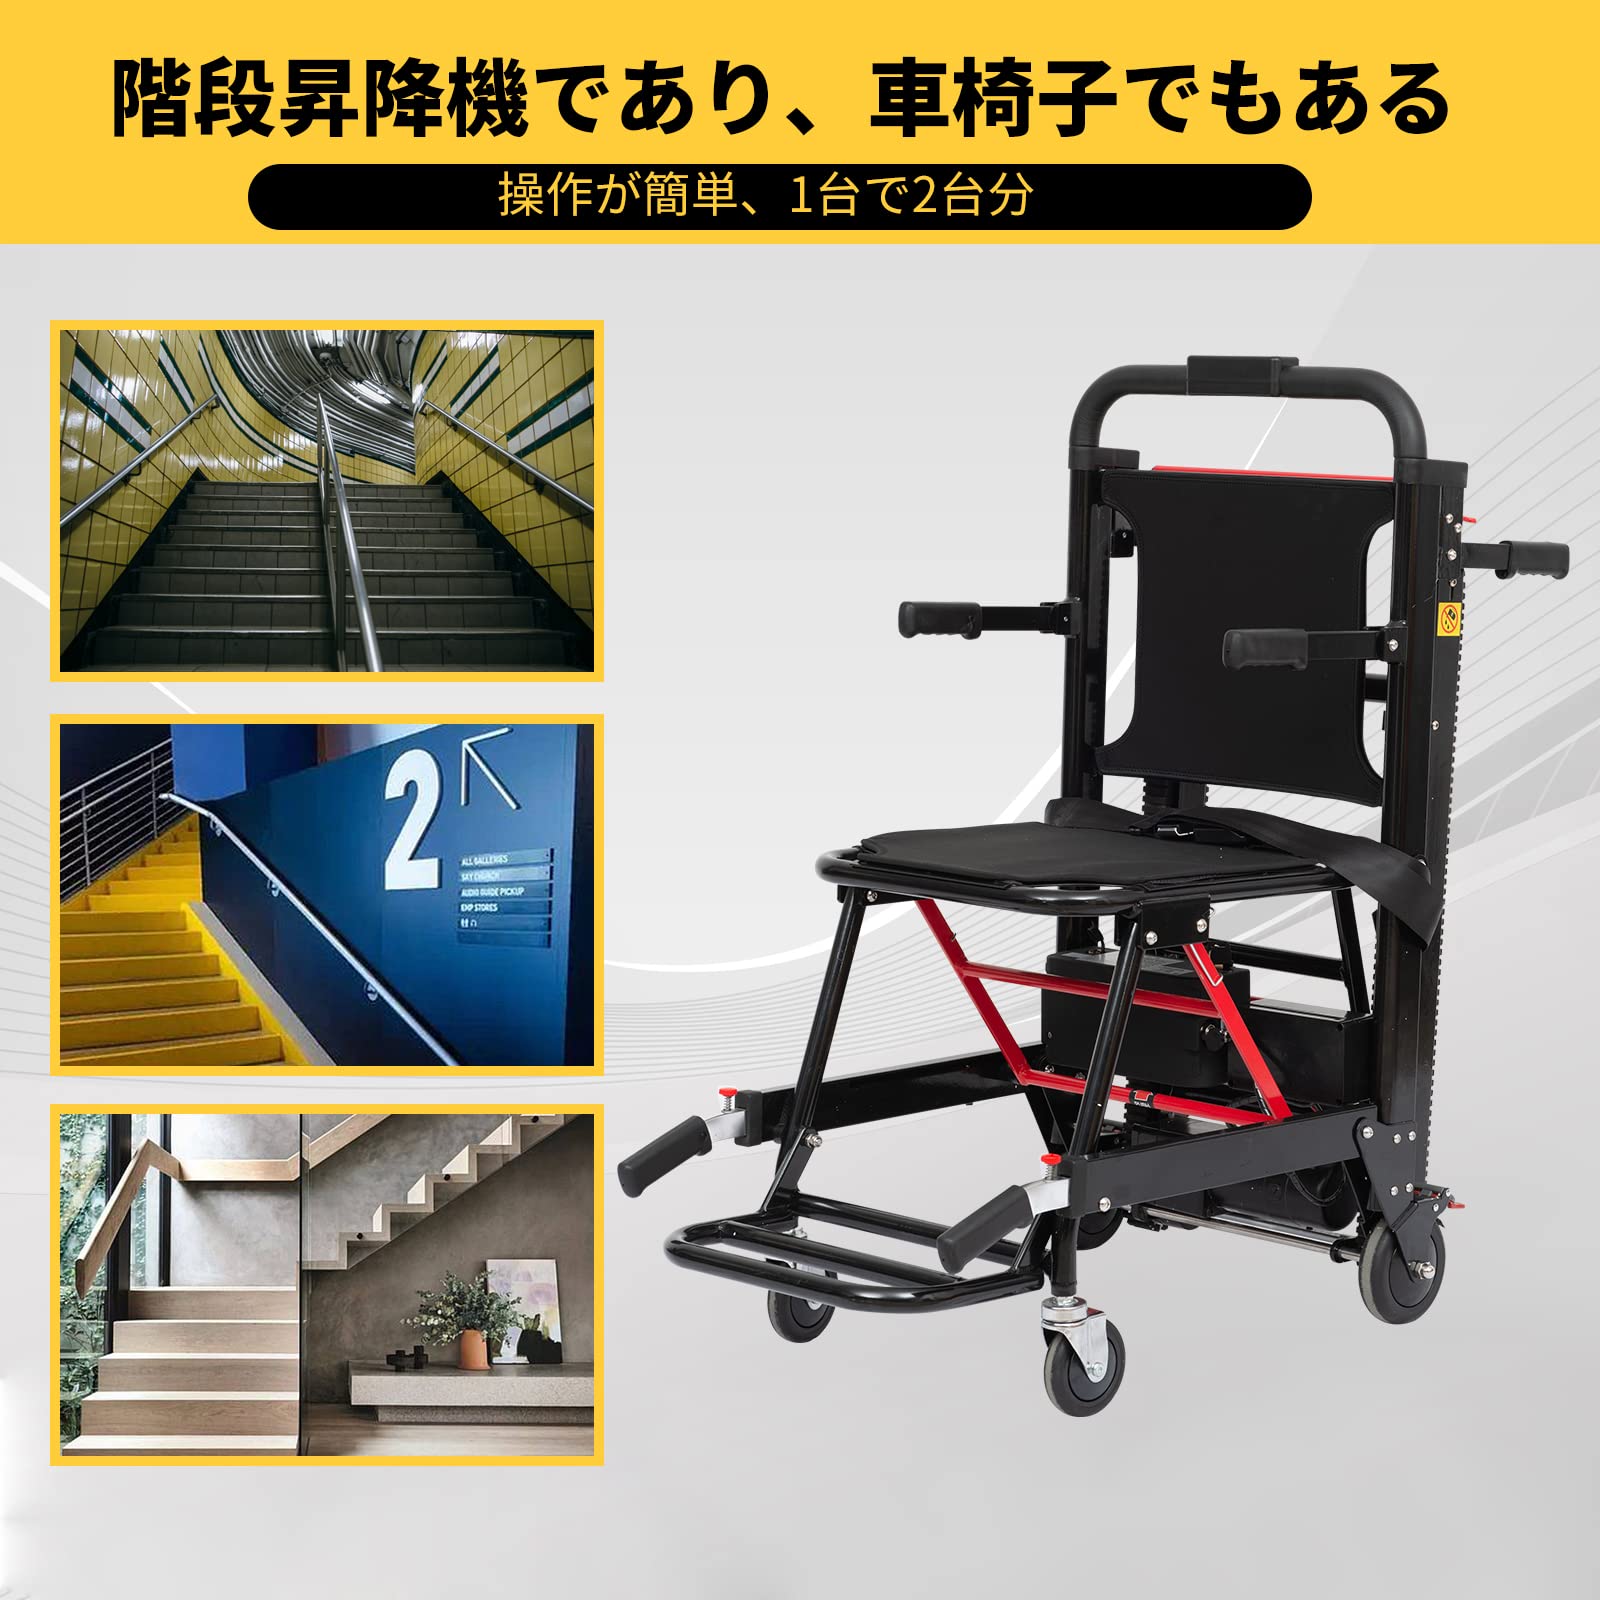 ✨美品✨ 高齢者用電動階段昇降機、高齢者障害者用手動階段昇降機、折りたたみ式軽量避難階段昇降機チェア車椅子